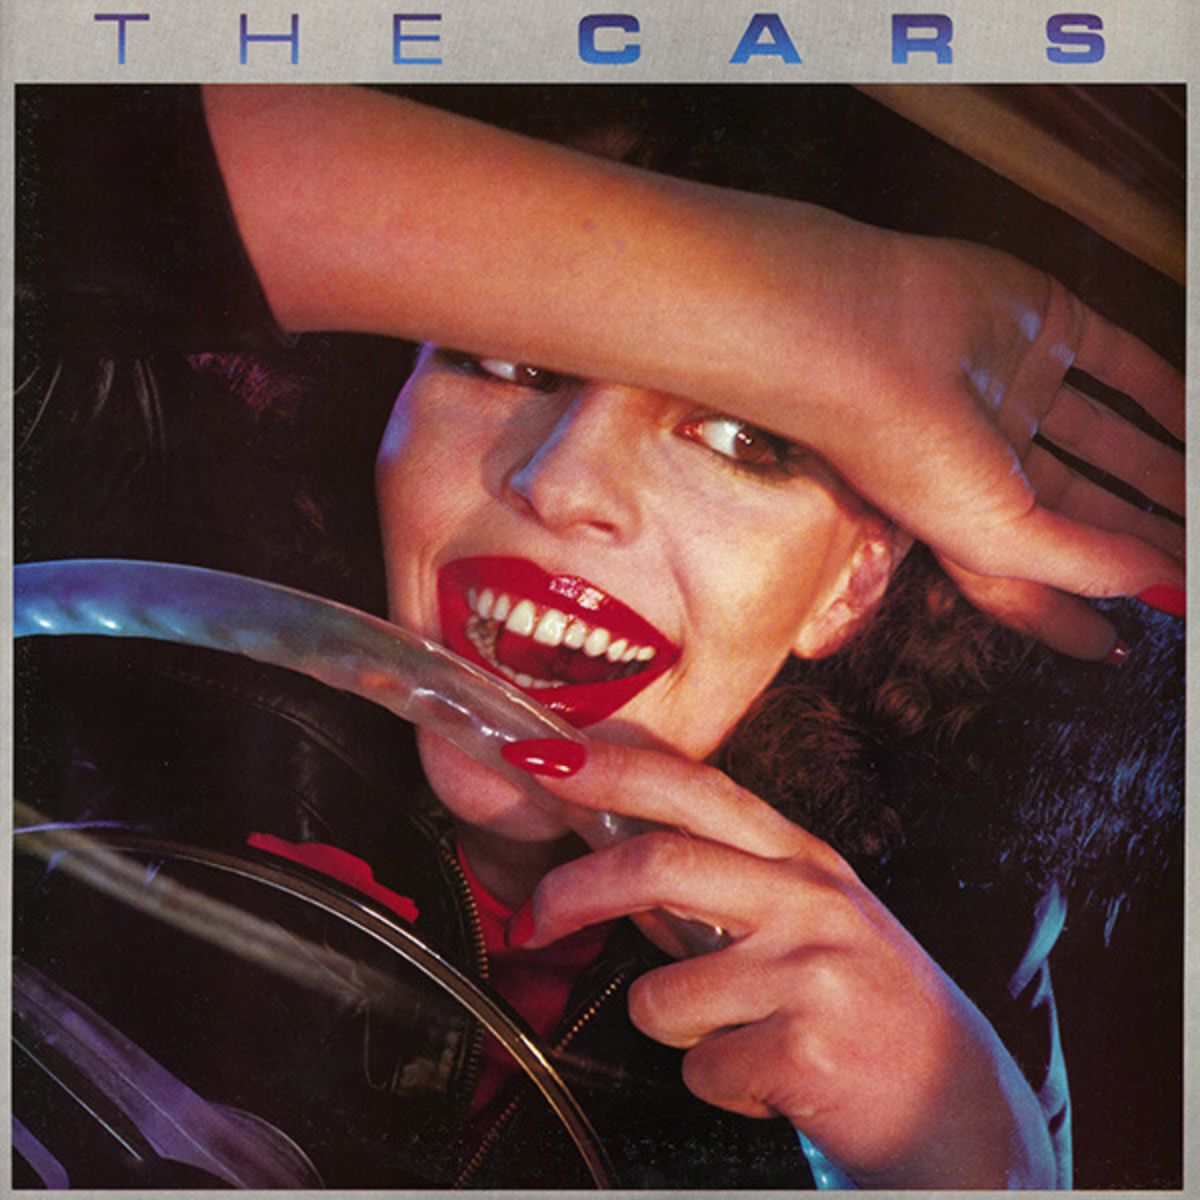 Das gleichnamige Debütalbum von The Cars